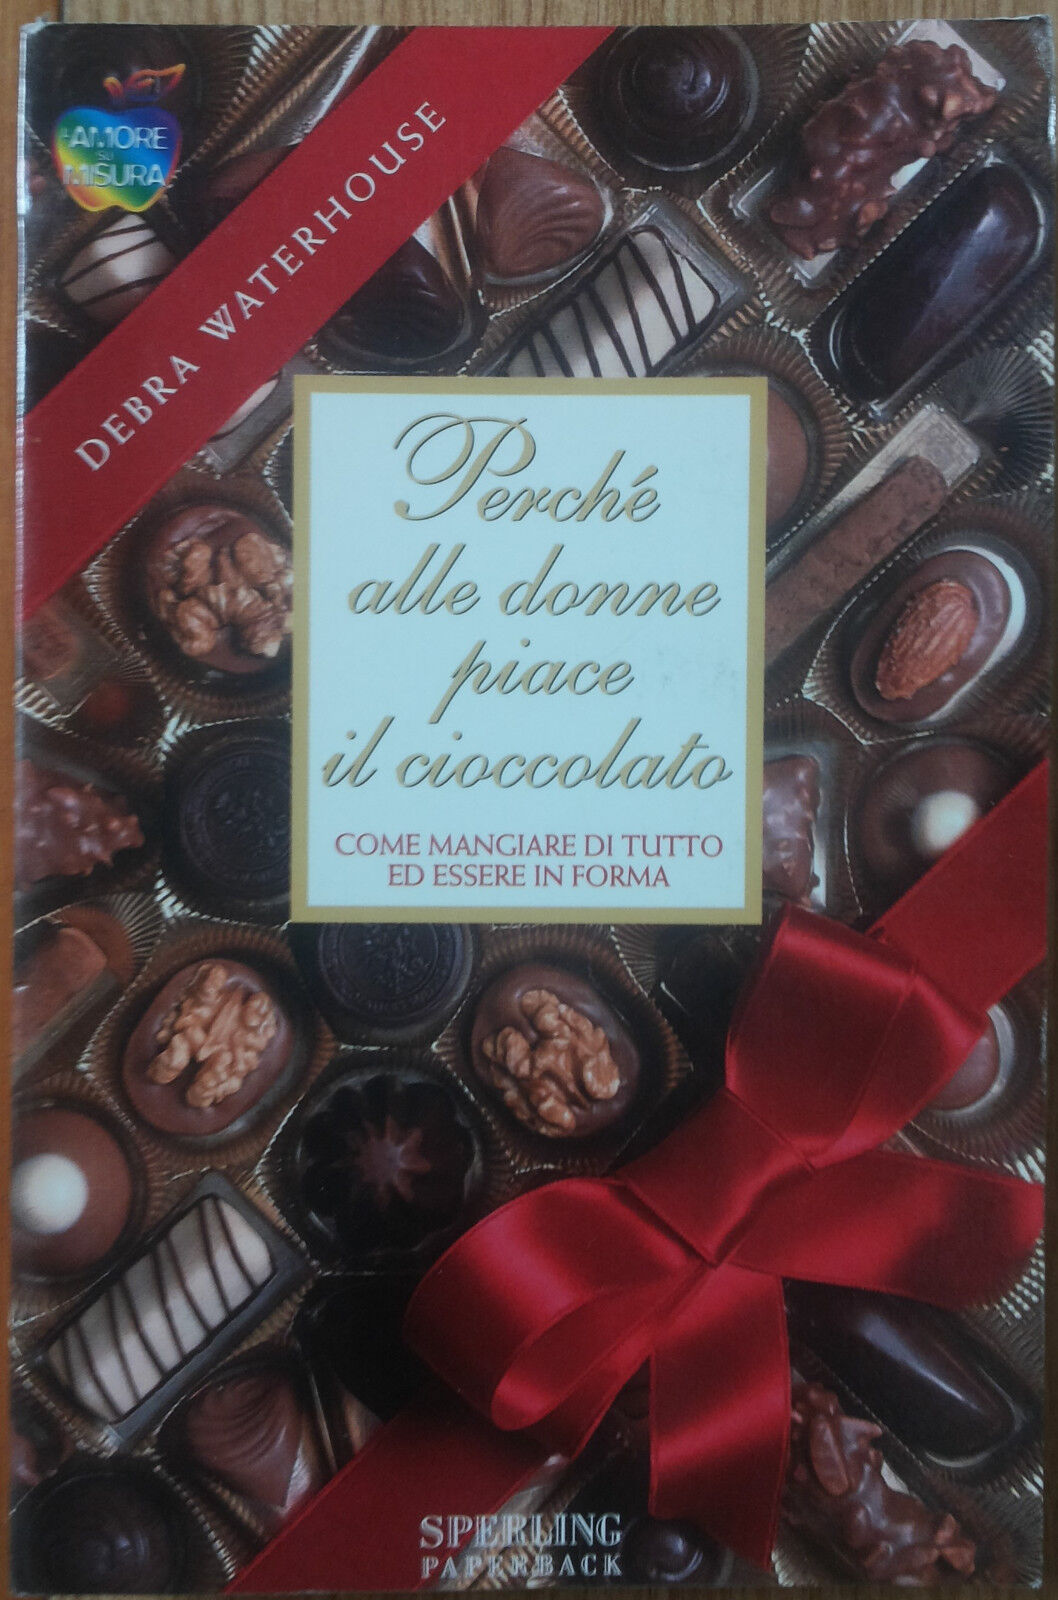 Perch? alle donne piace il cioccolato - Waterhouse - Sperling Paperback,1998 - R libro usato